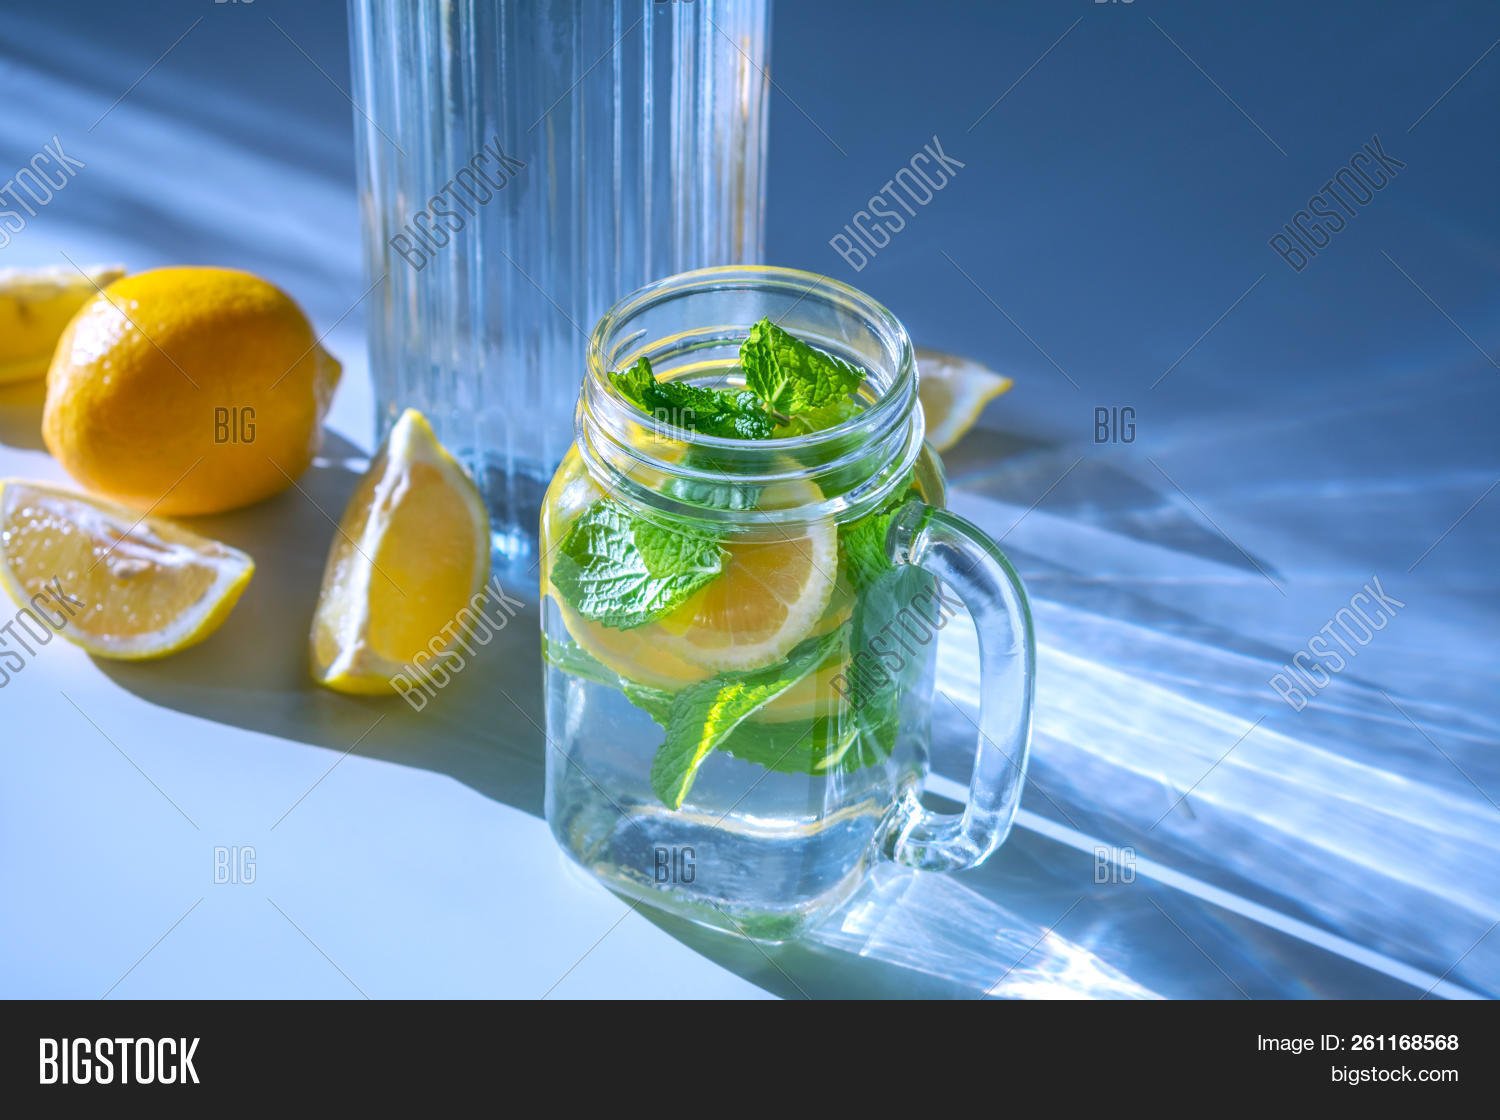 С какой водой пить лимон. Вода с лимоном и мятой. Стакан воды с лимоном. Лимон. Лимонная вода с мятой.